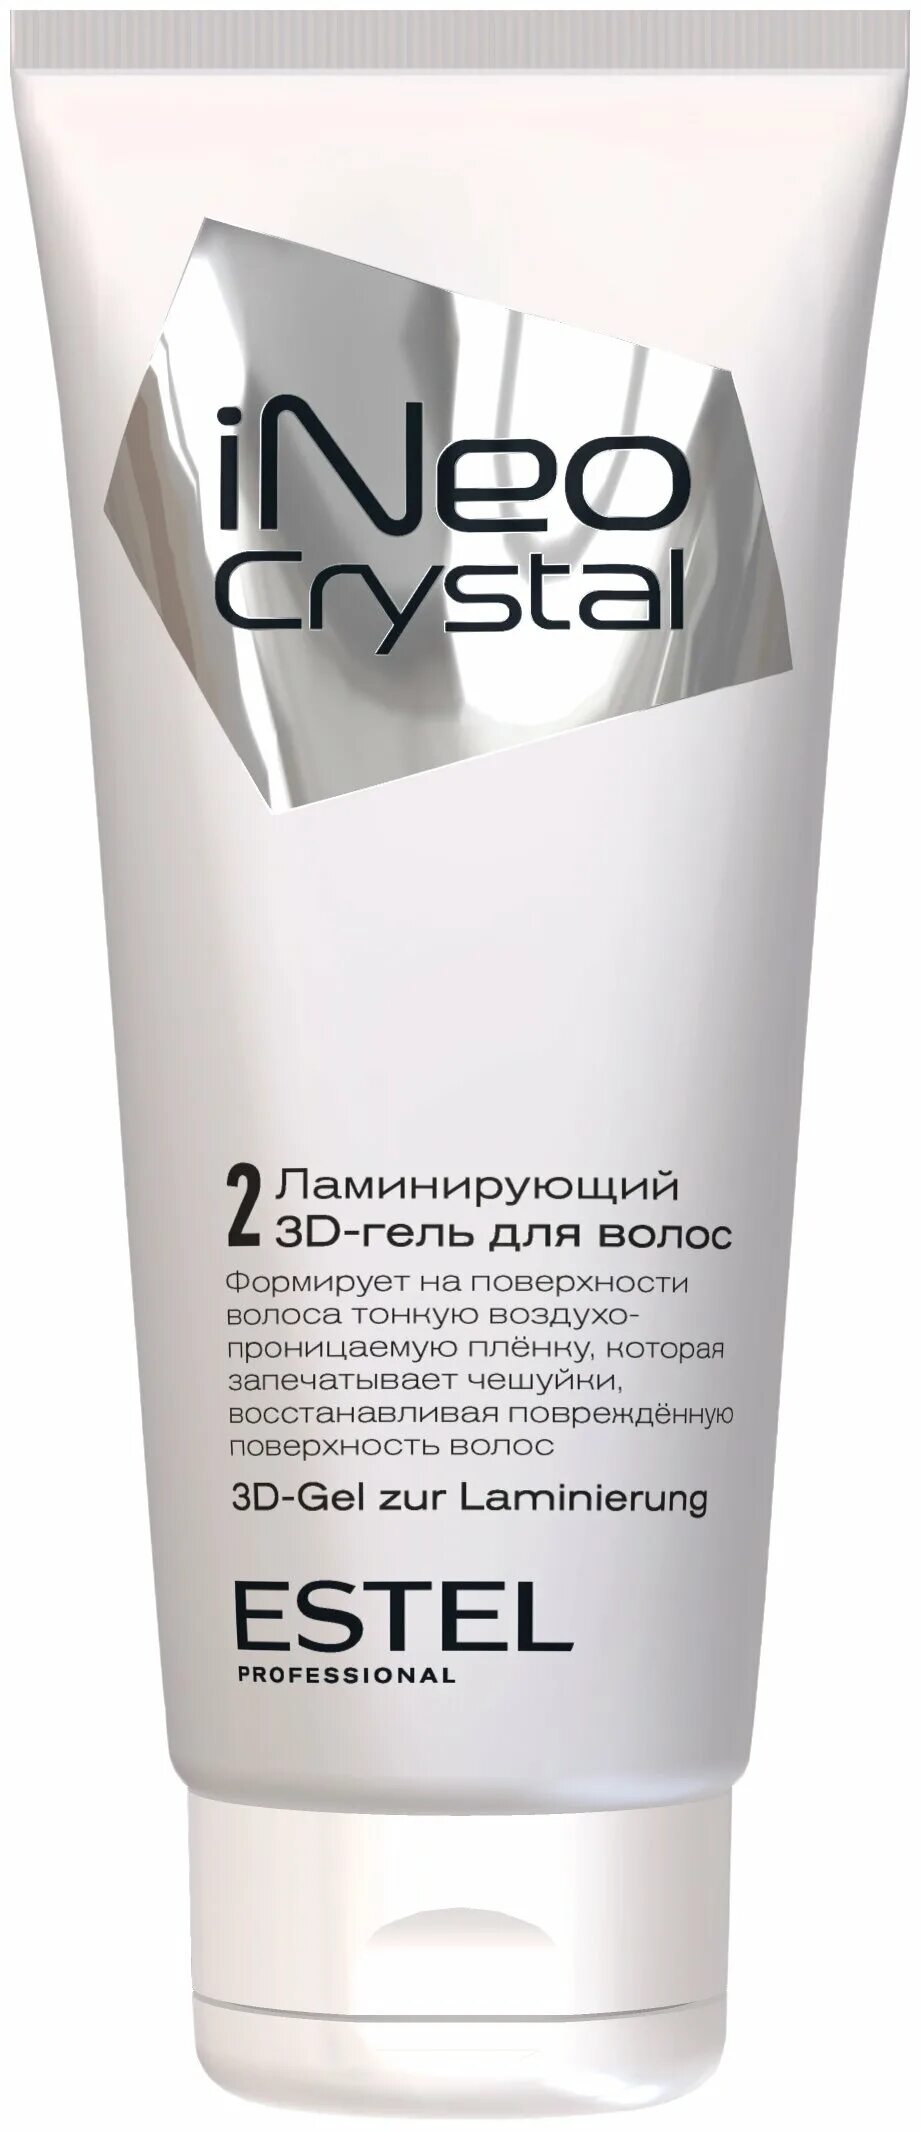 Estel ламинирующий 3d гель для волос. Набор для ламинирования волос Estel ineo-Crystal (гель + праймер + сыворотка). Ламинирующий 3d-гель для волос Estel ineo-Crystal (200 мл). Эстель ineo 3d гель ламинирование. Ламинирующий гель